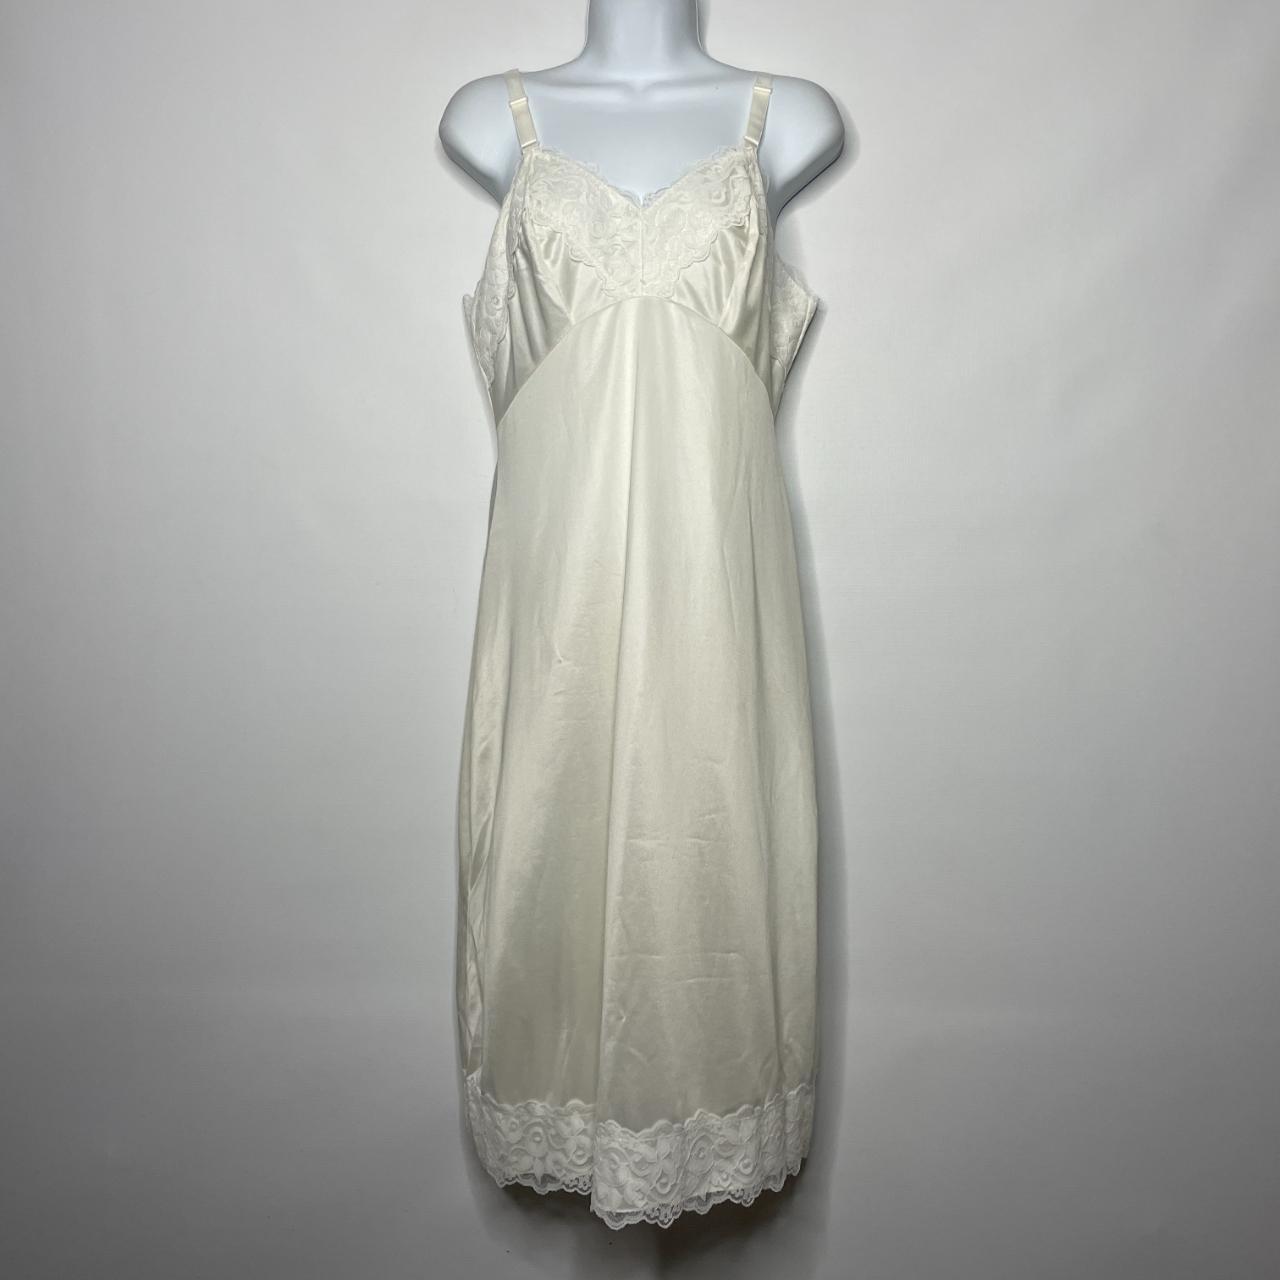 American Vintage Women's Cream and White Underwear | Depop